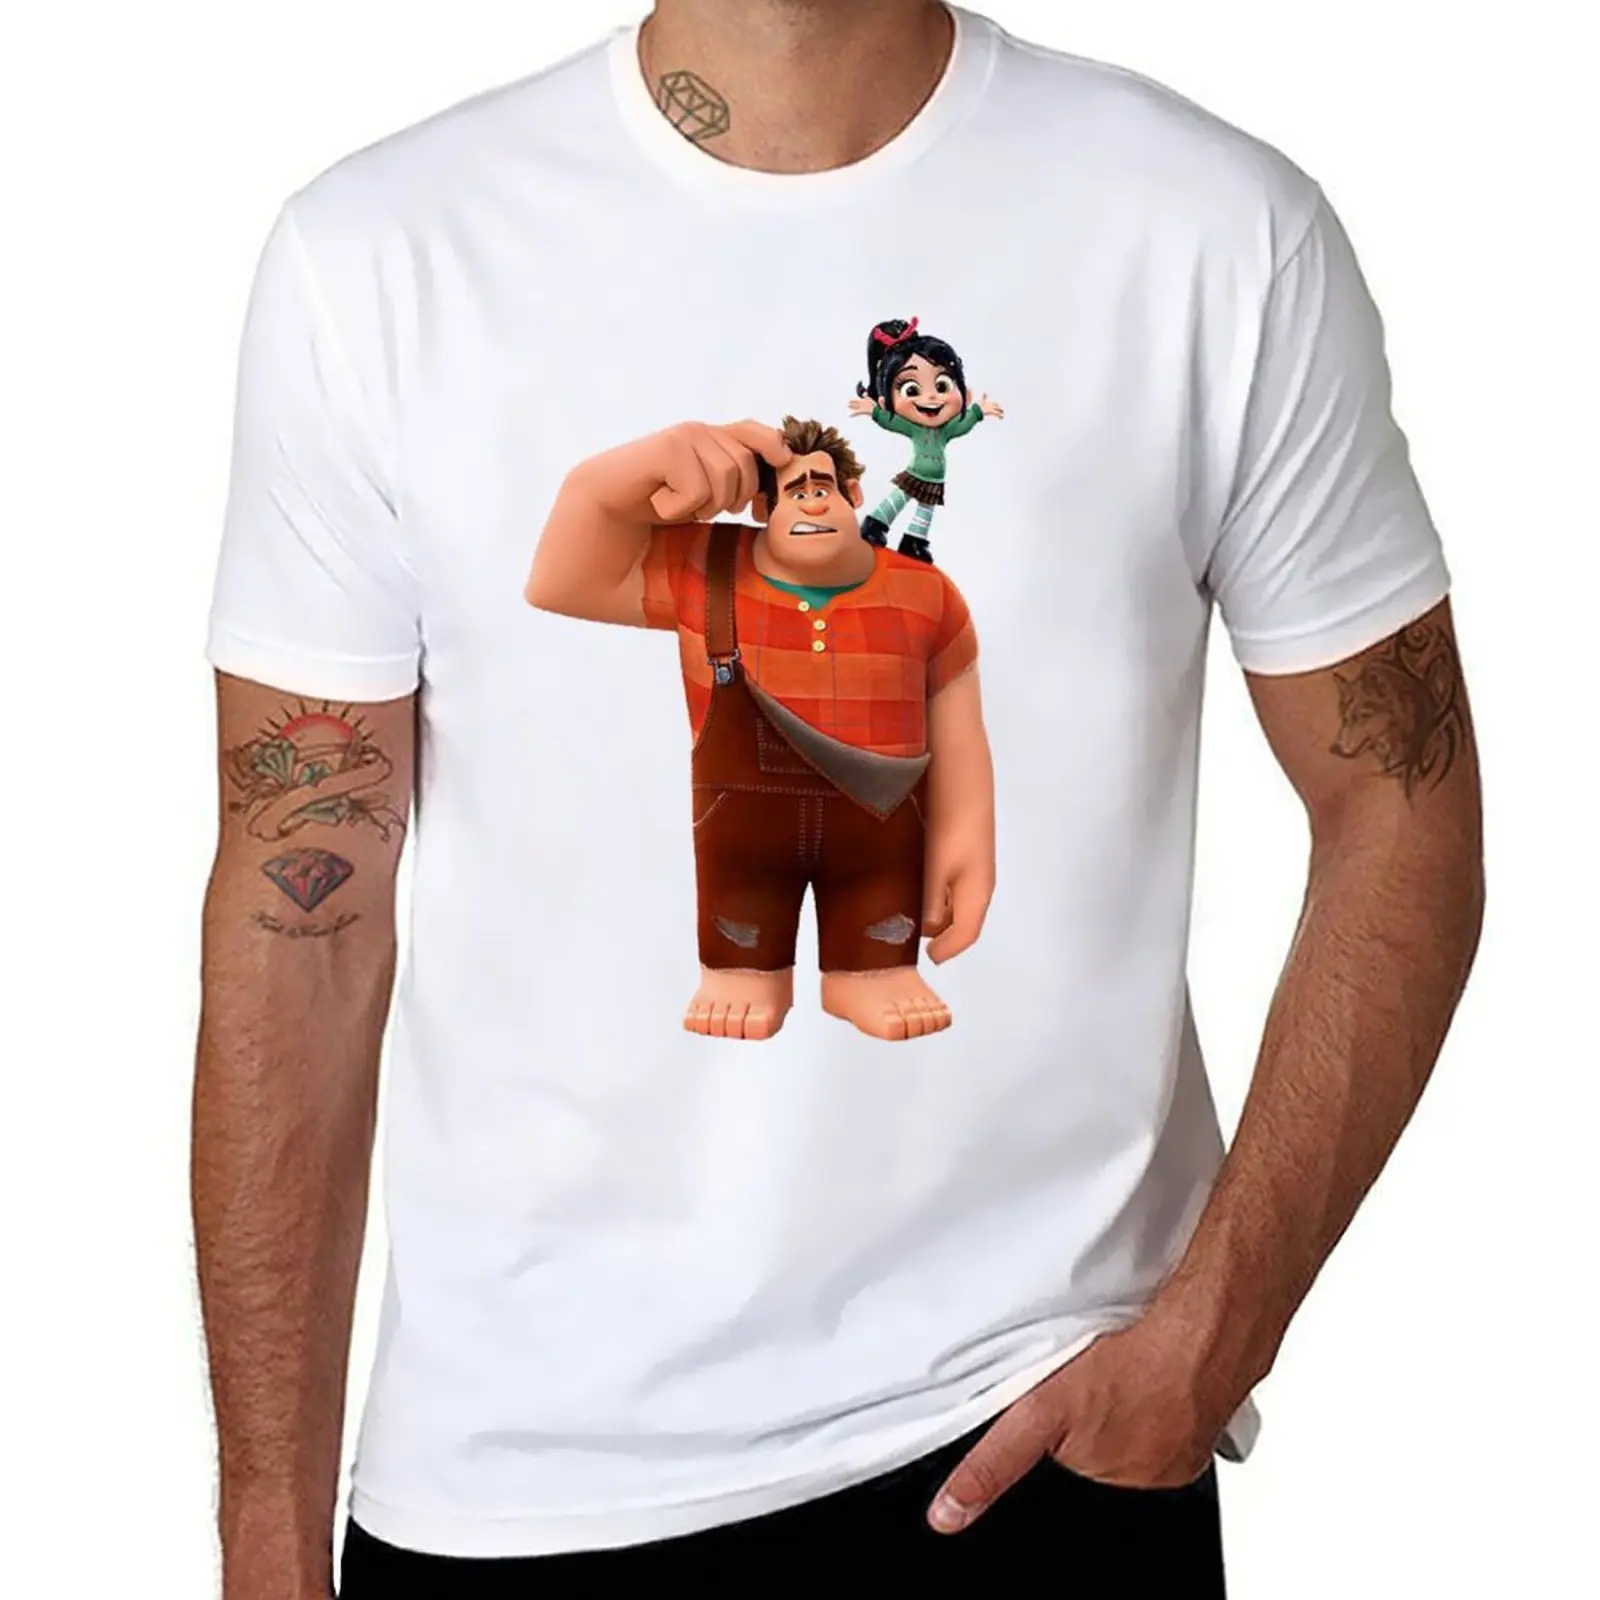 Новые футболки Vanellope И Ralph Friends, футболки для тяжеловесов, изготовленные на заказ футболки, облегающие футболки для мужчин Изображение 0